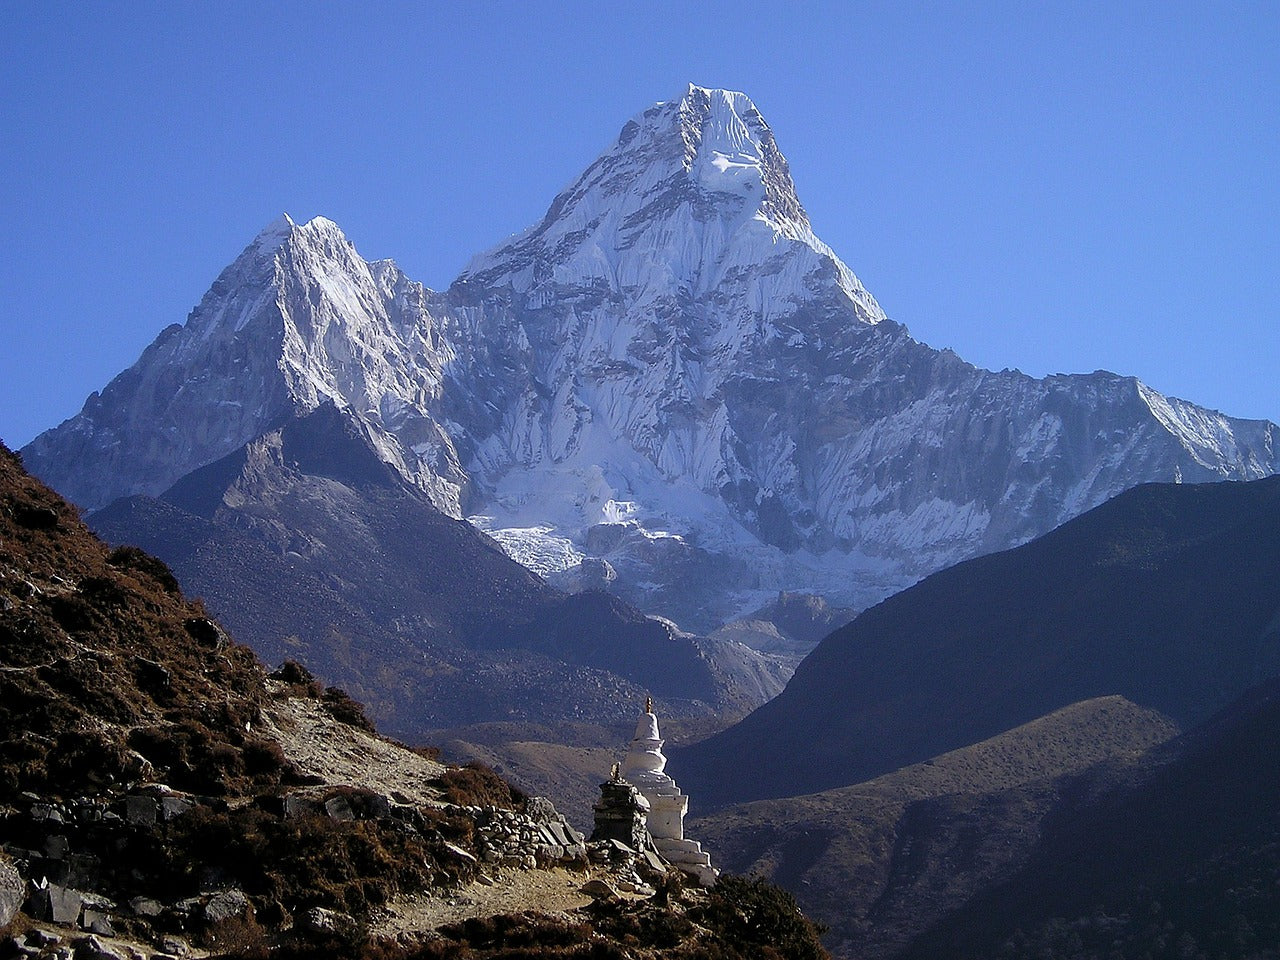 KRISTALLSALZ aus den Ausläufern des Himalaya, fein gemahlen